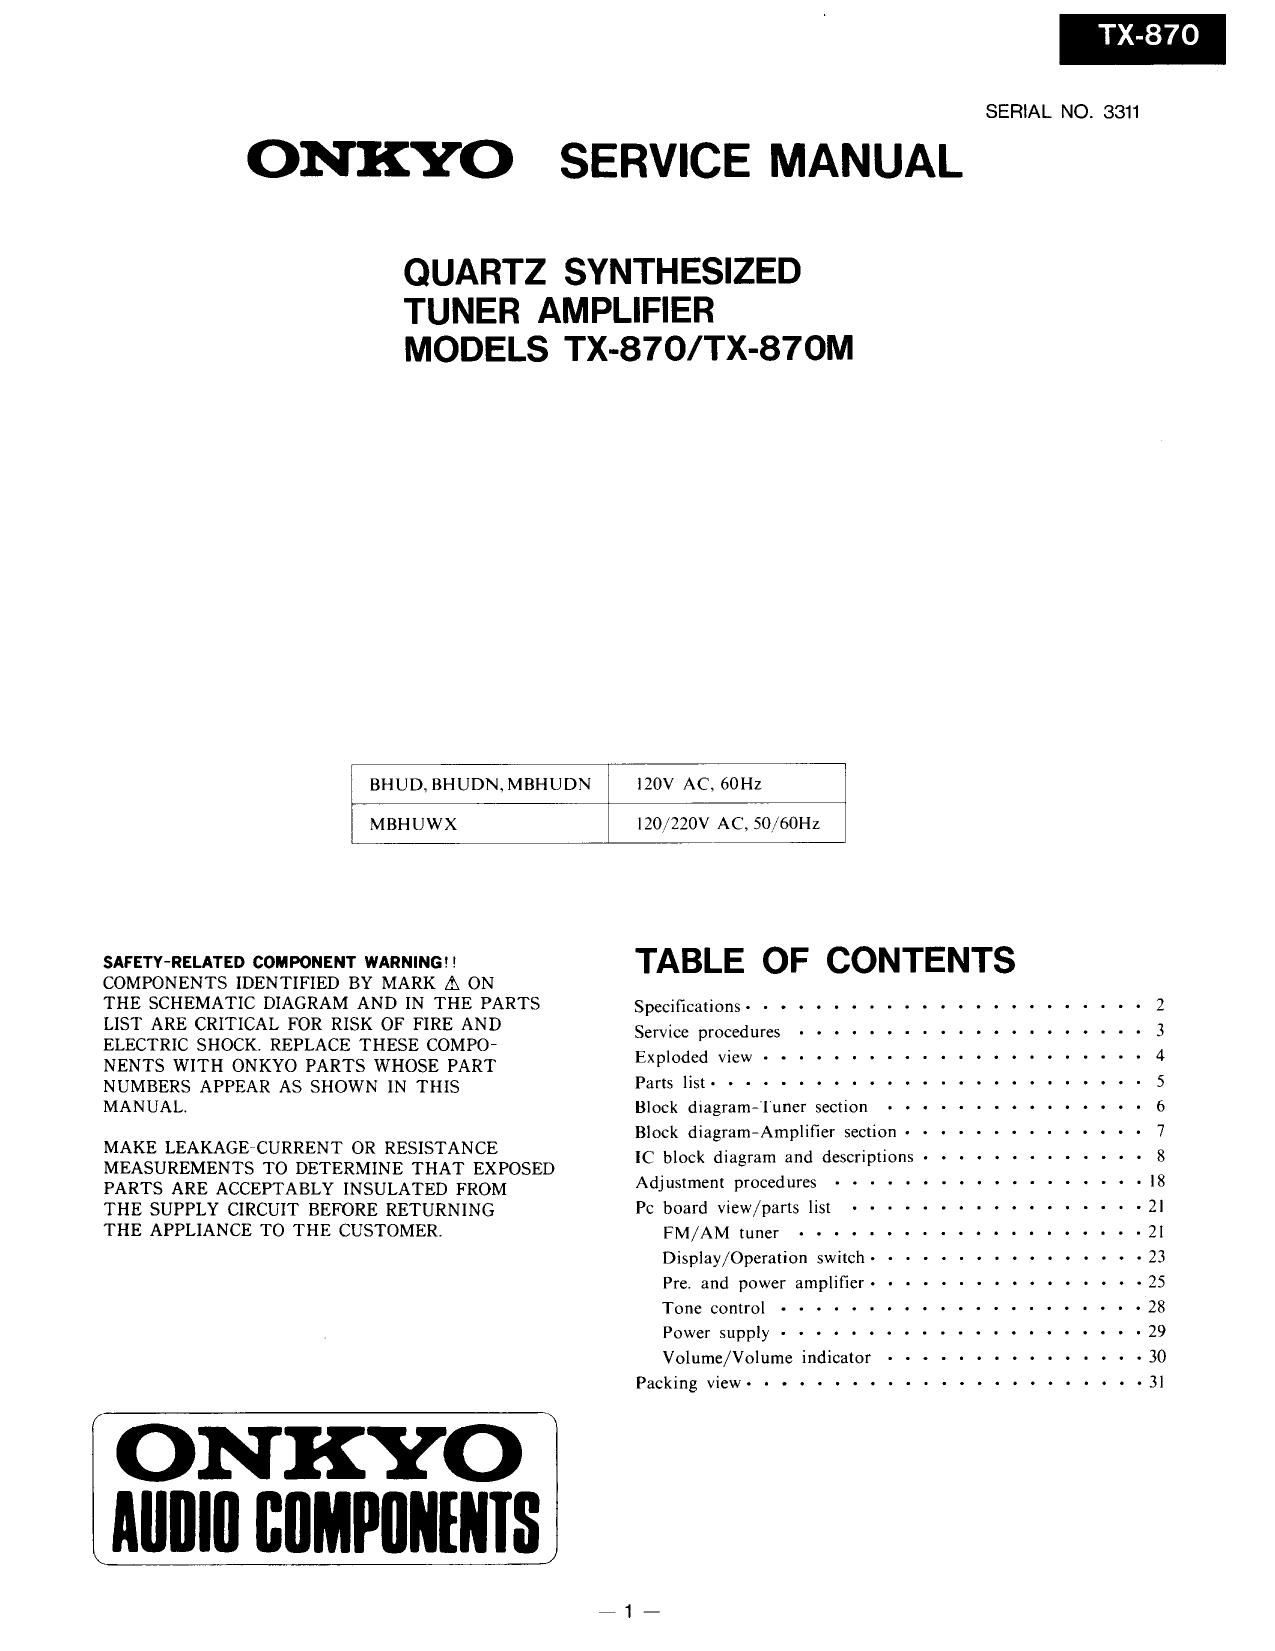 Onkyo TX 870 Service Manual